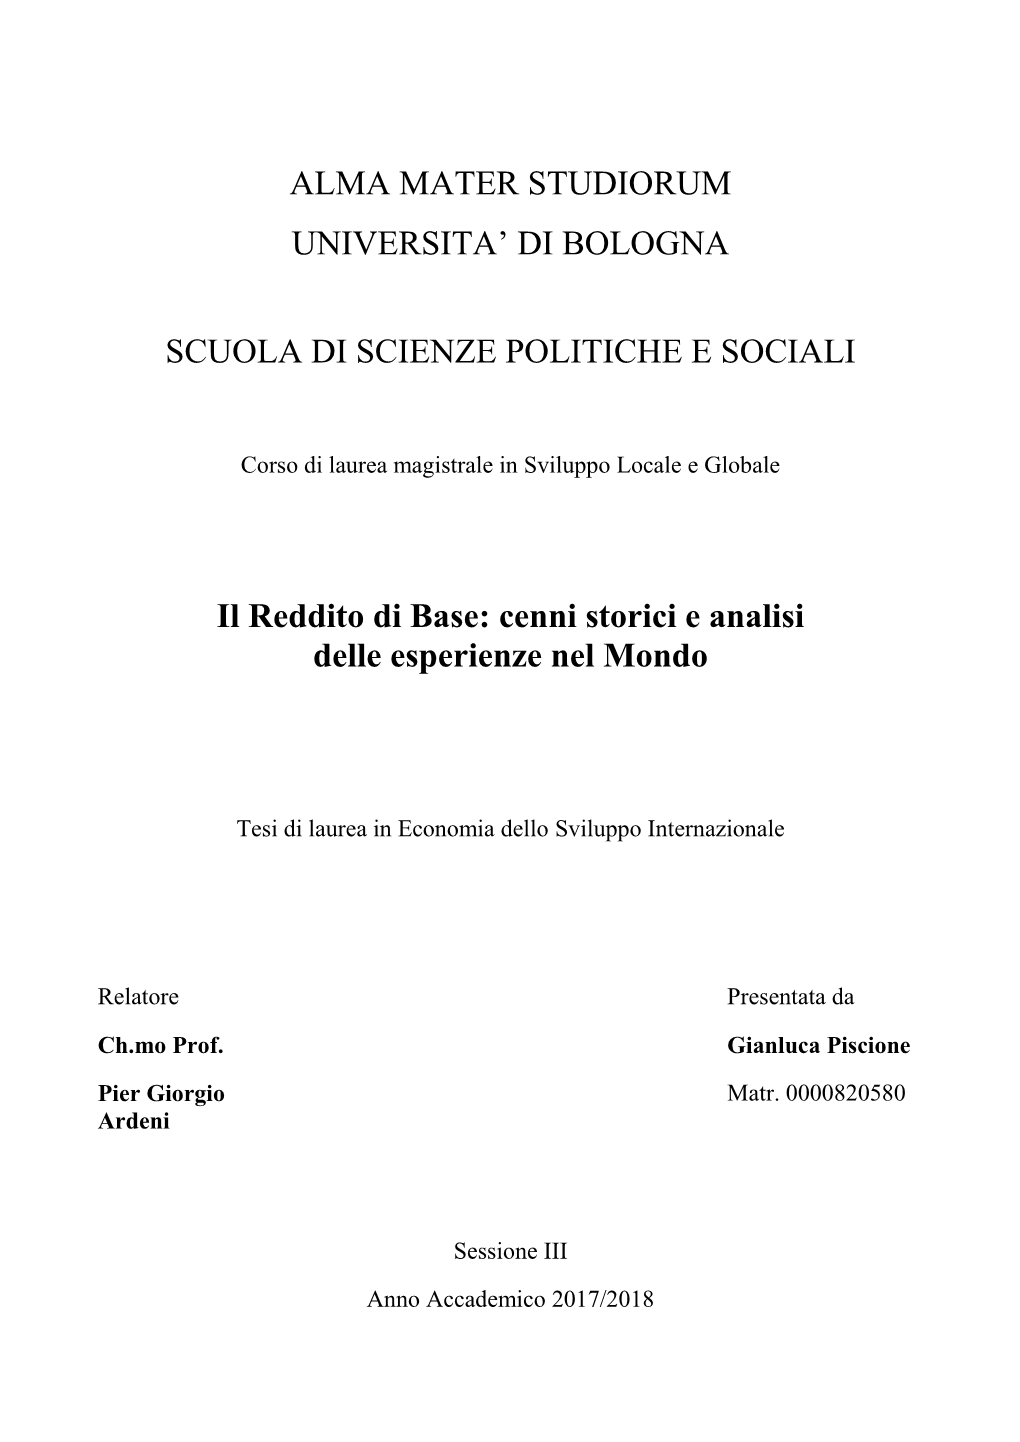 Alma Mater Studiorum Universita' Di Bologna